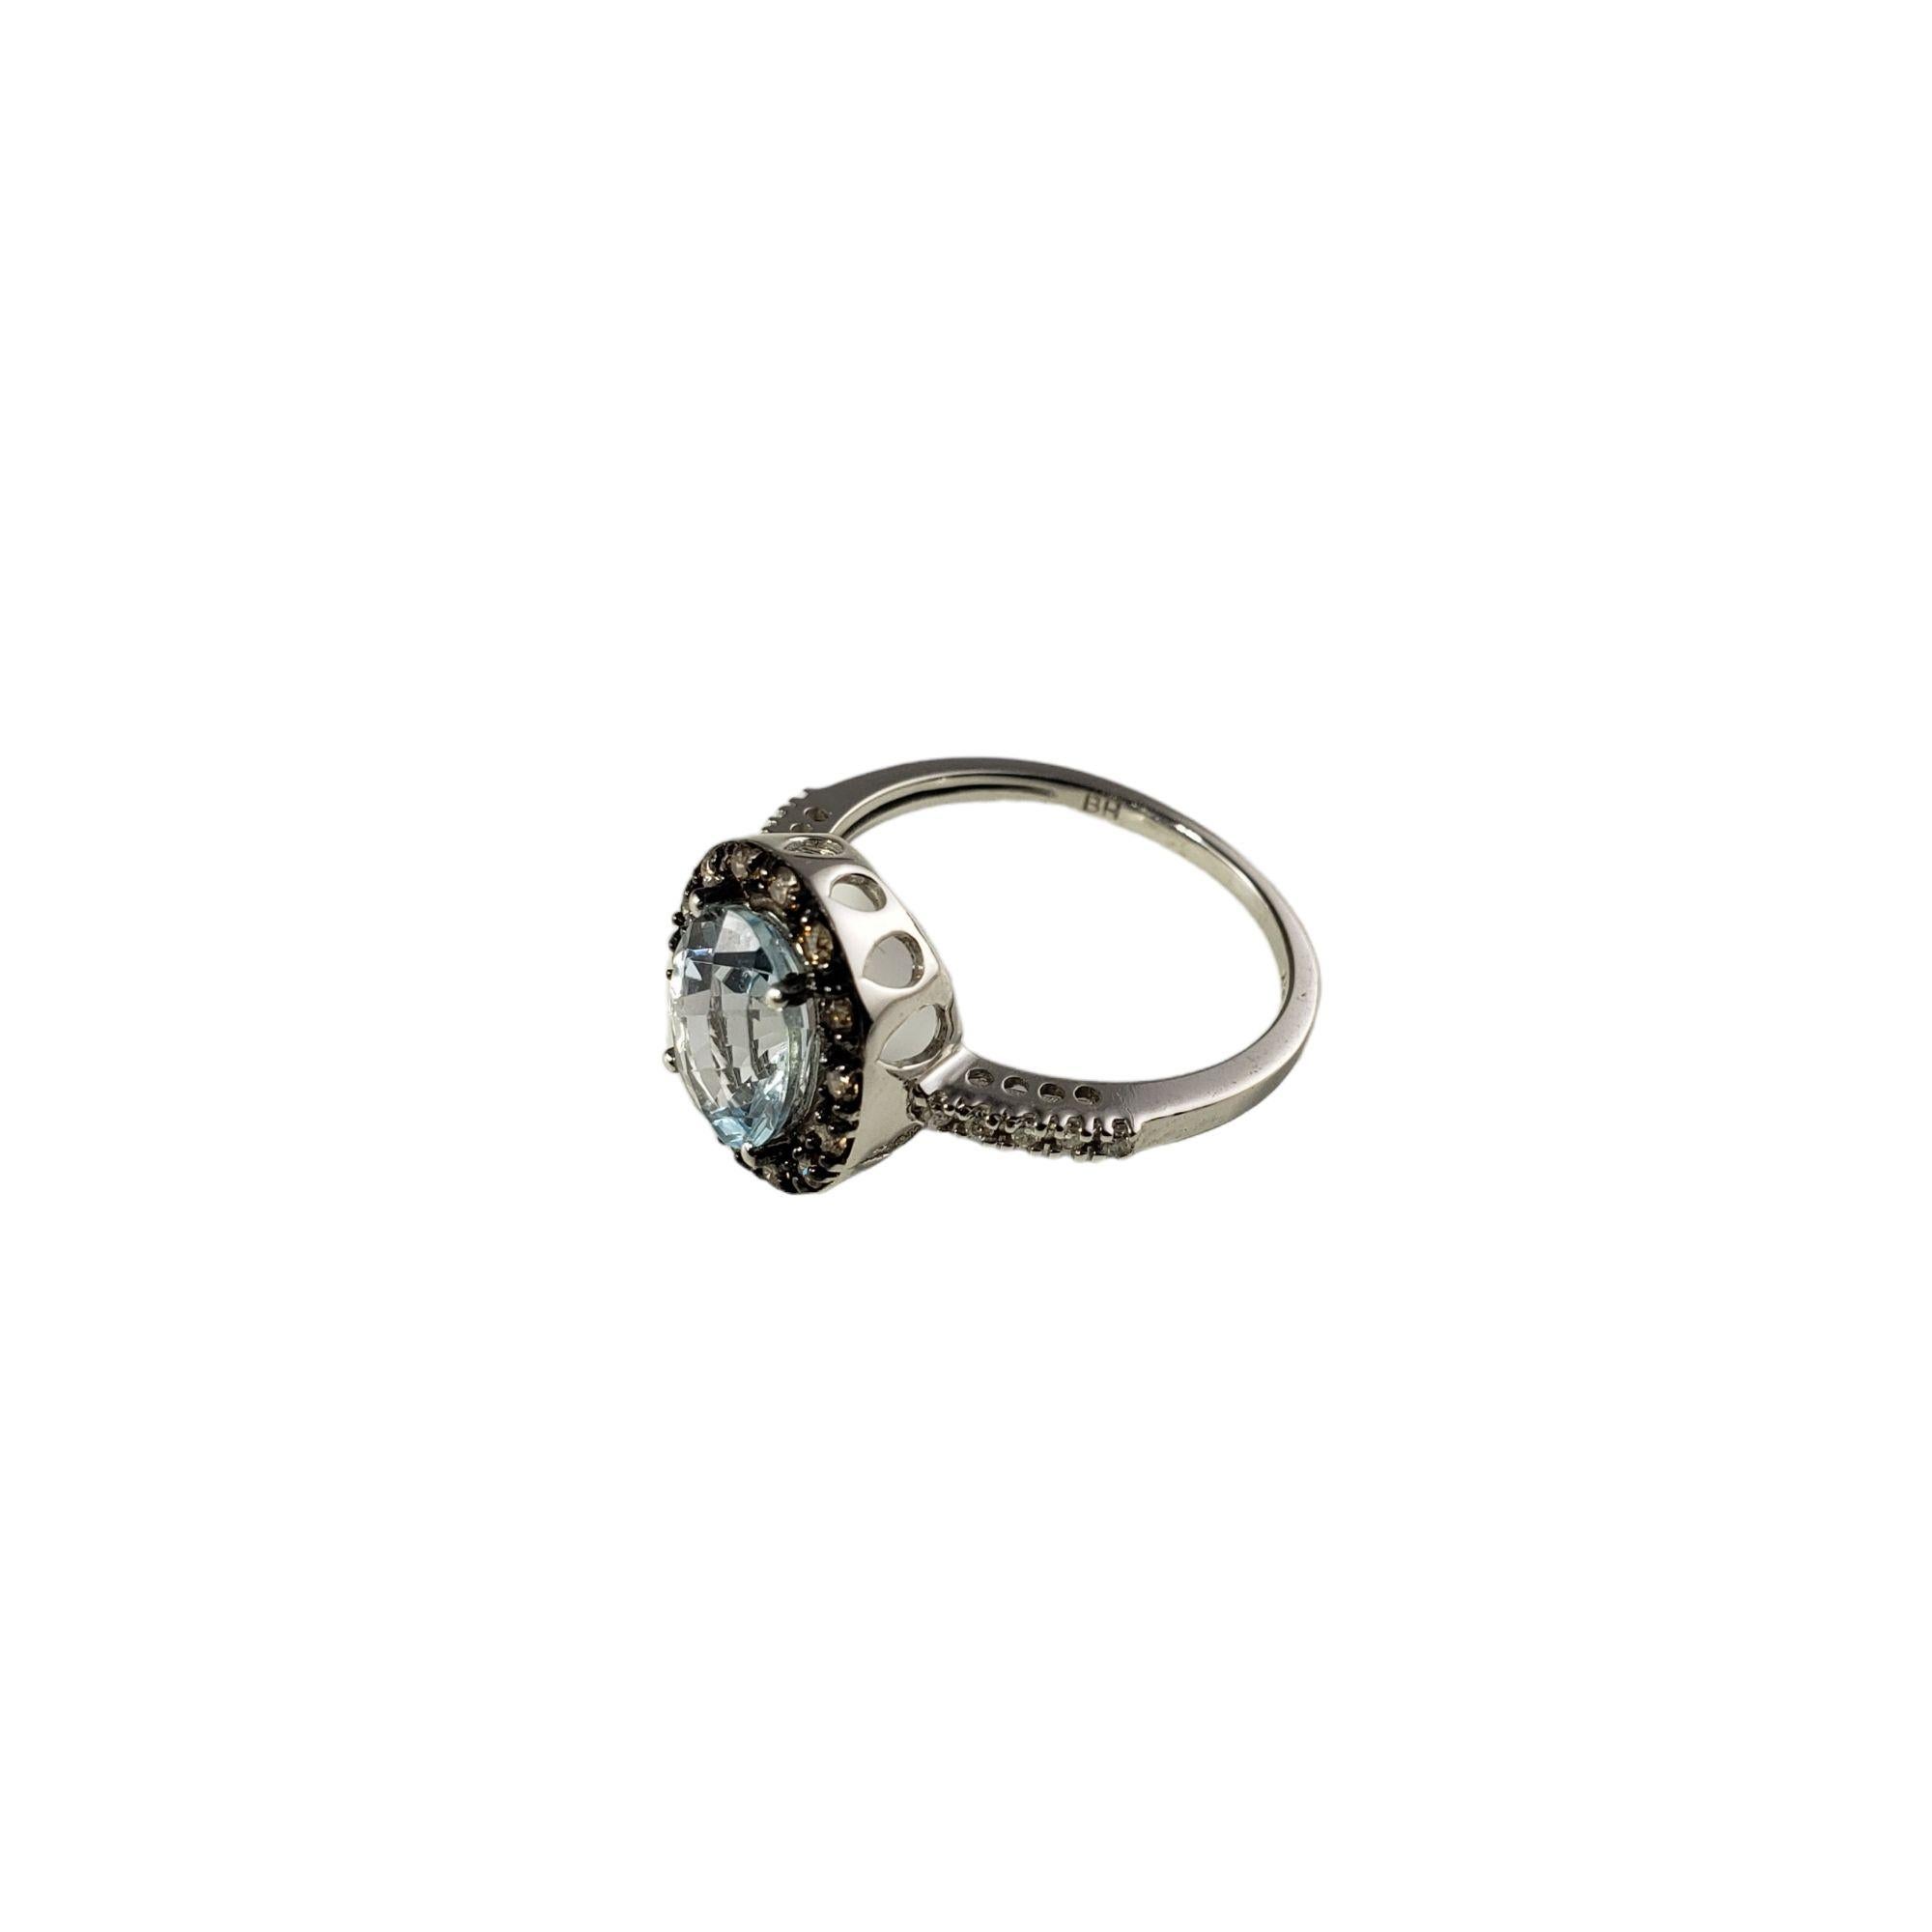 Vintage 14 Karat Weißgold Aquamarin und Diamant Ring Größe 7,25 JAGi zertifiziert-

Dieser atemberaubende Ring besteht aus einem ovalen Aquamarin im Schachbrettschliff (9 mm x 7 mm) und 24 runden Diamanten im Brillant- und Einzelschliff, gefasst in